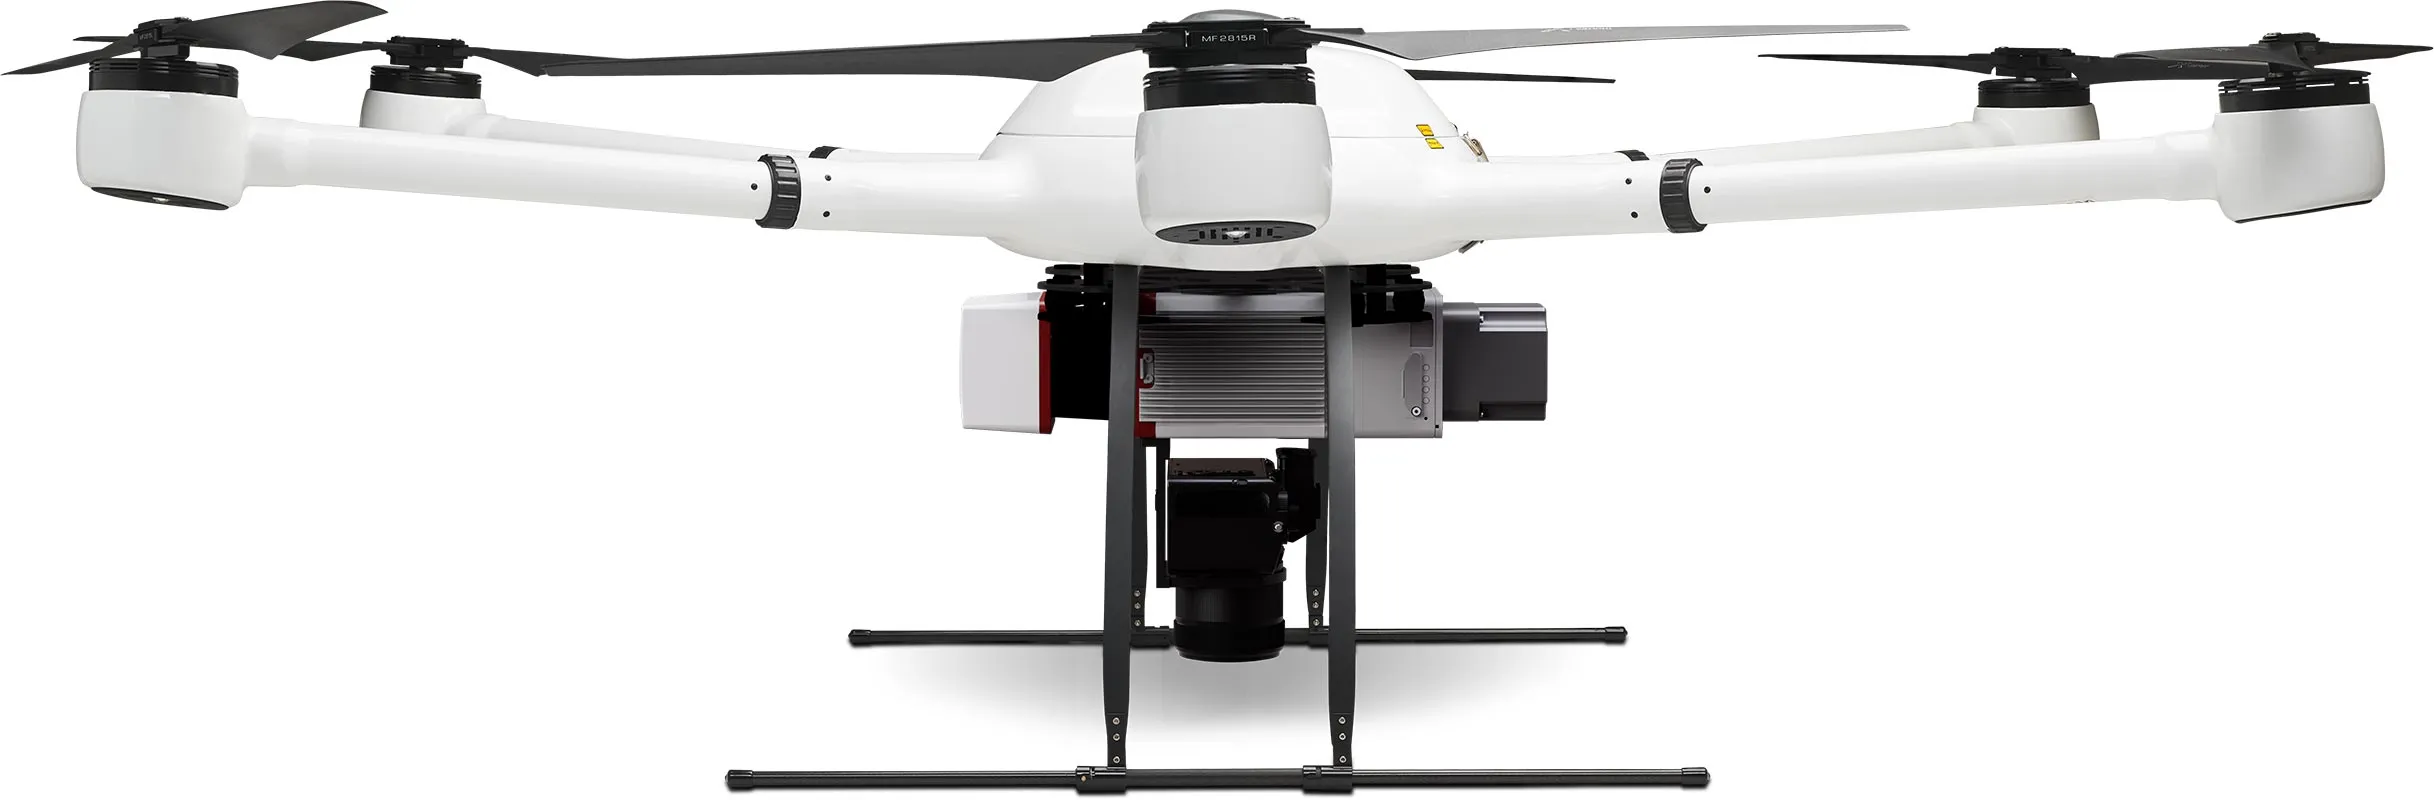 Exabotix Atlas LiDAR Drone industriel Vue latérale de droite avec scanner LiDAR et caméra combinés pour des scans 3D précis en couleurs réelles et des tâches de mapping.